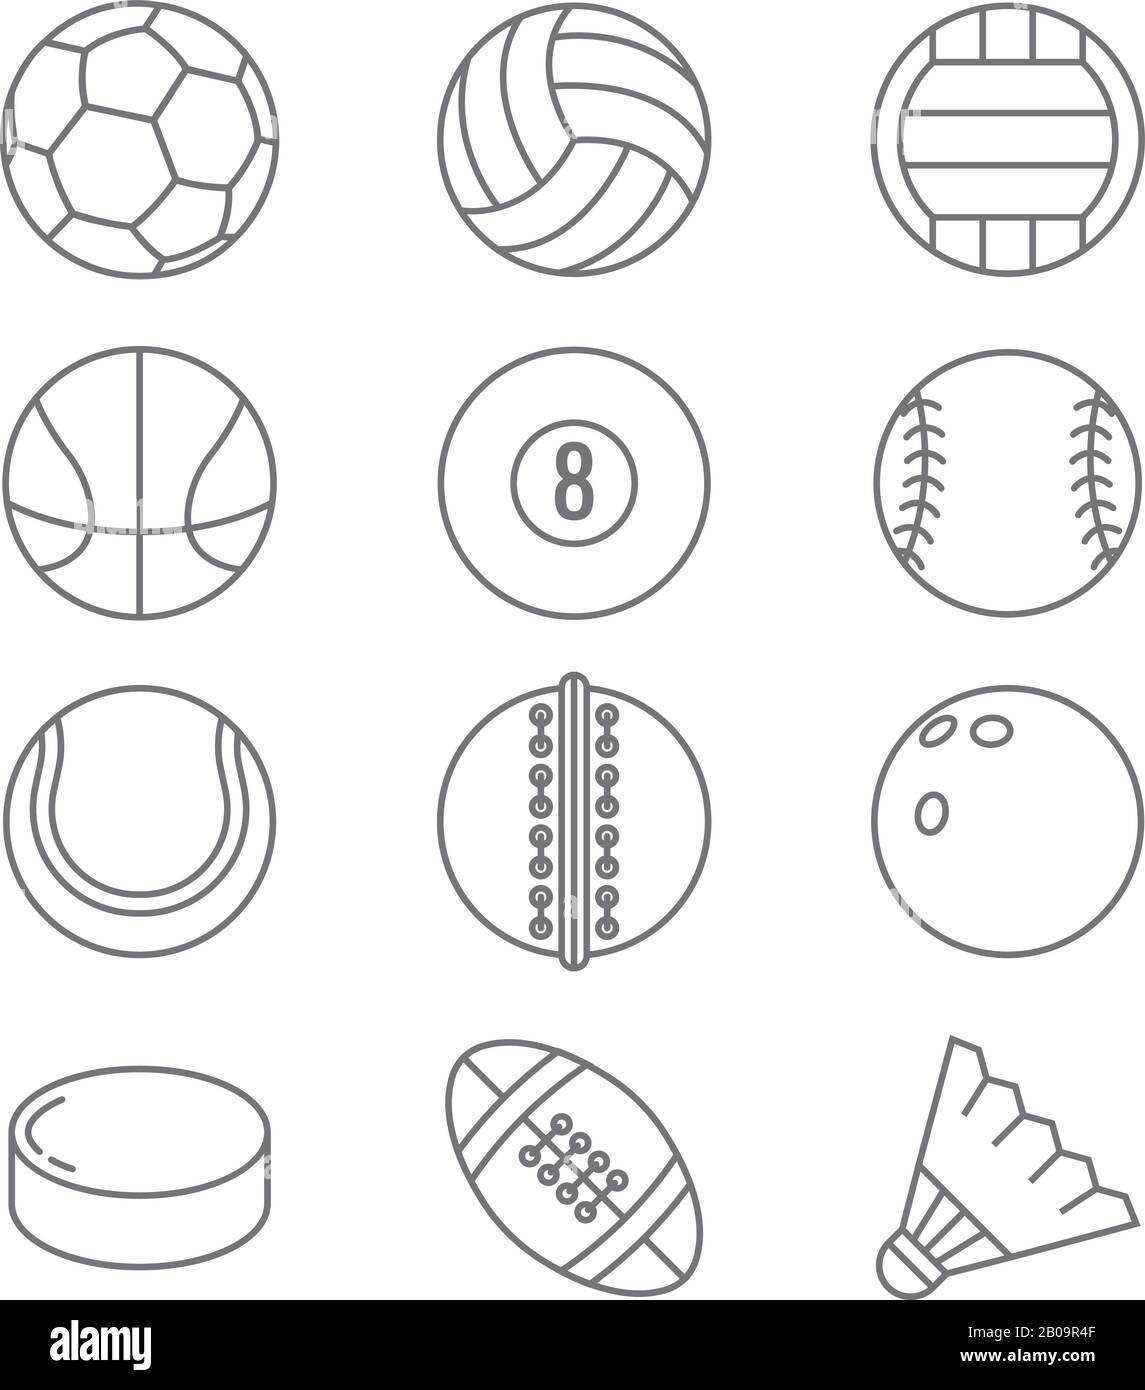 Sportbälle zeigen dünne Liniensymbole an. Abbildung: Basketball und Fußball, Tennis und Fußball, Baseball oder Bowling, Golf- und Volleyballspiele Stock Vektor